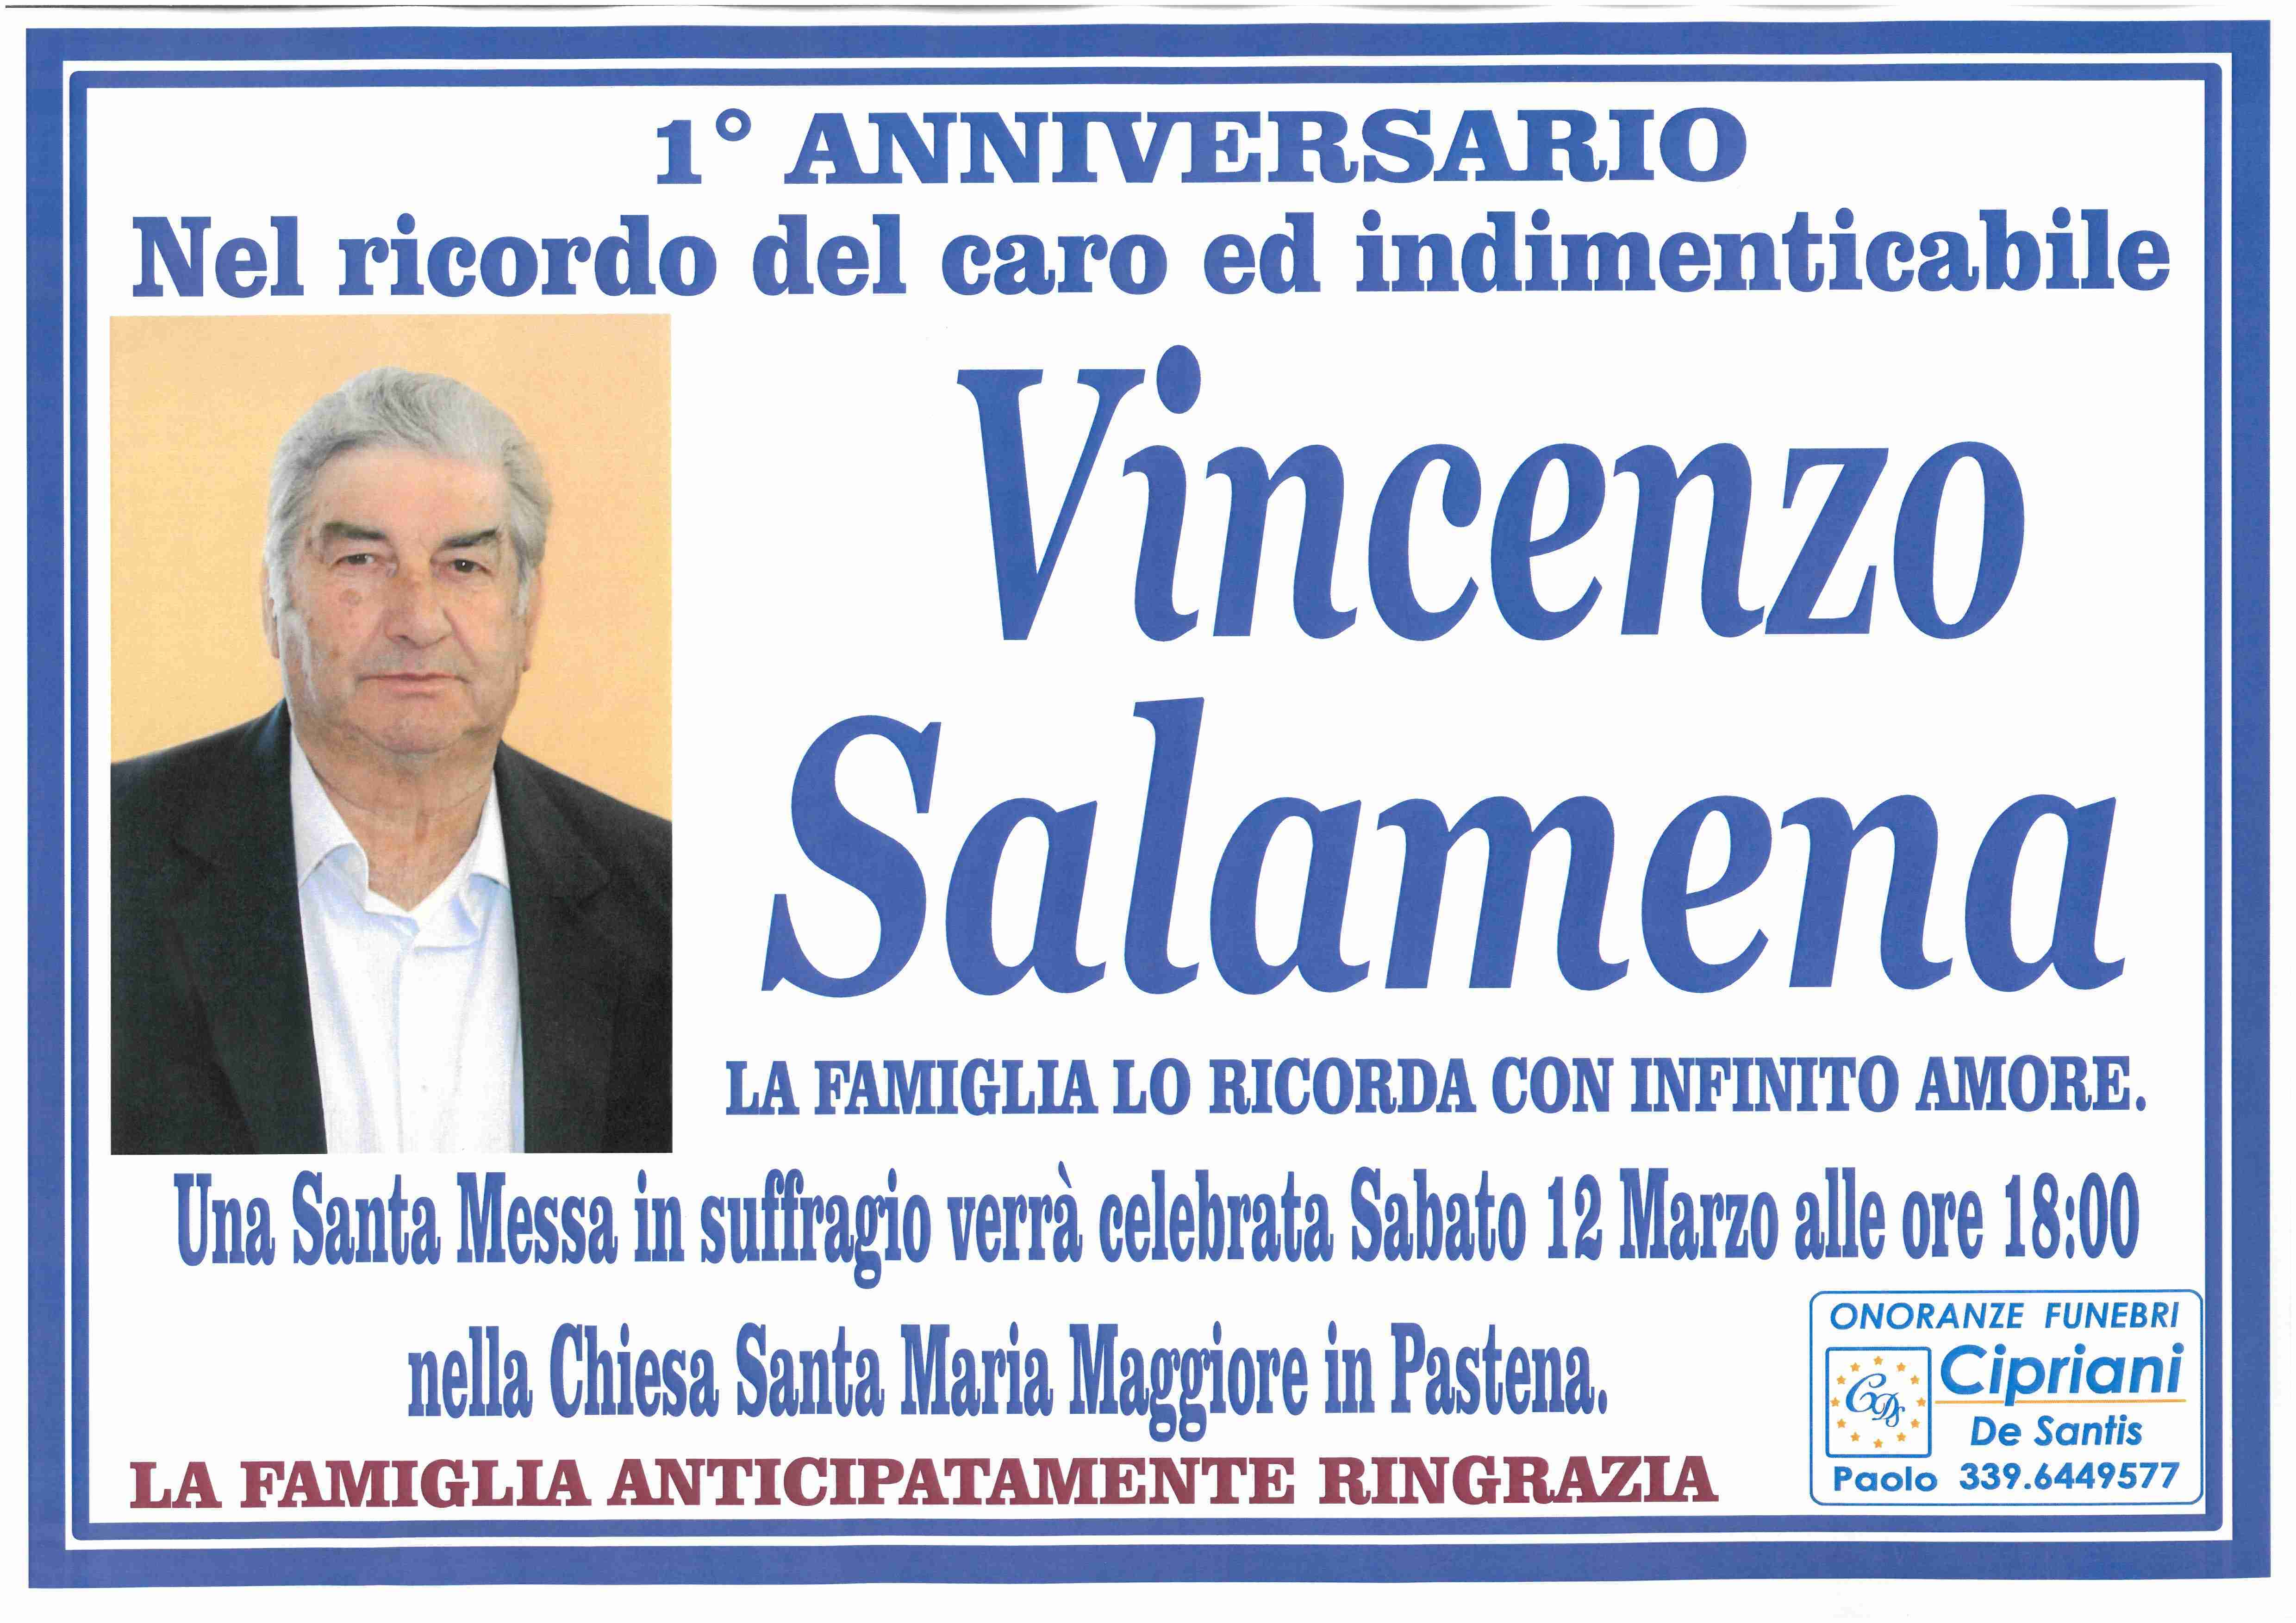 Vincenzo Salamena